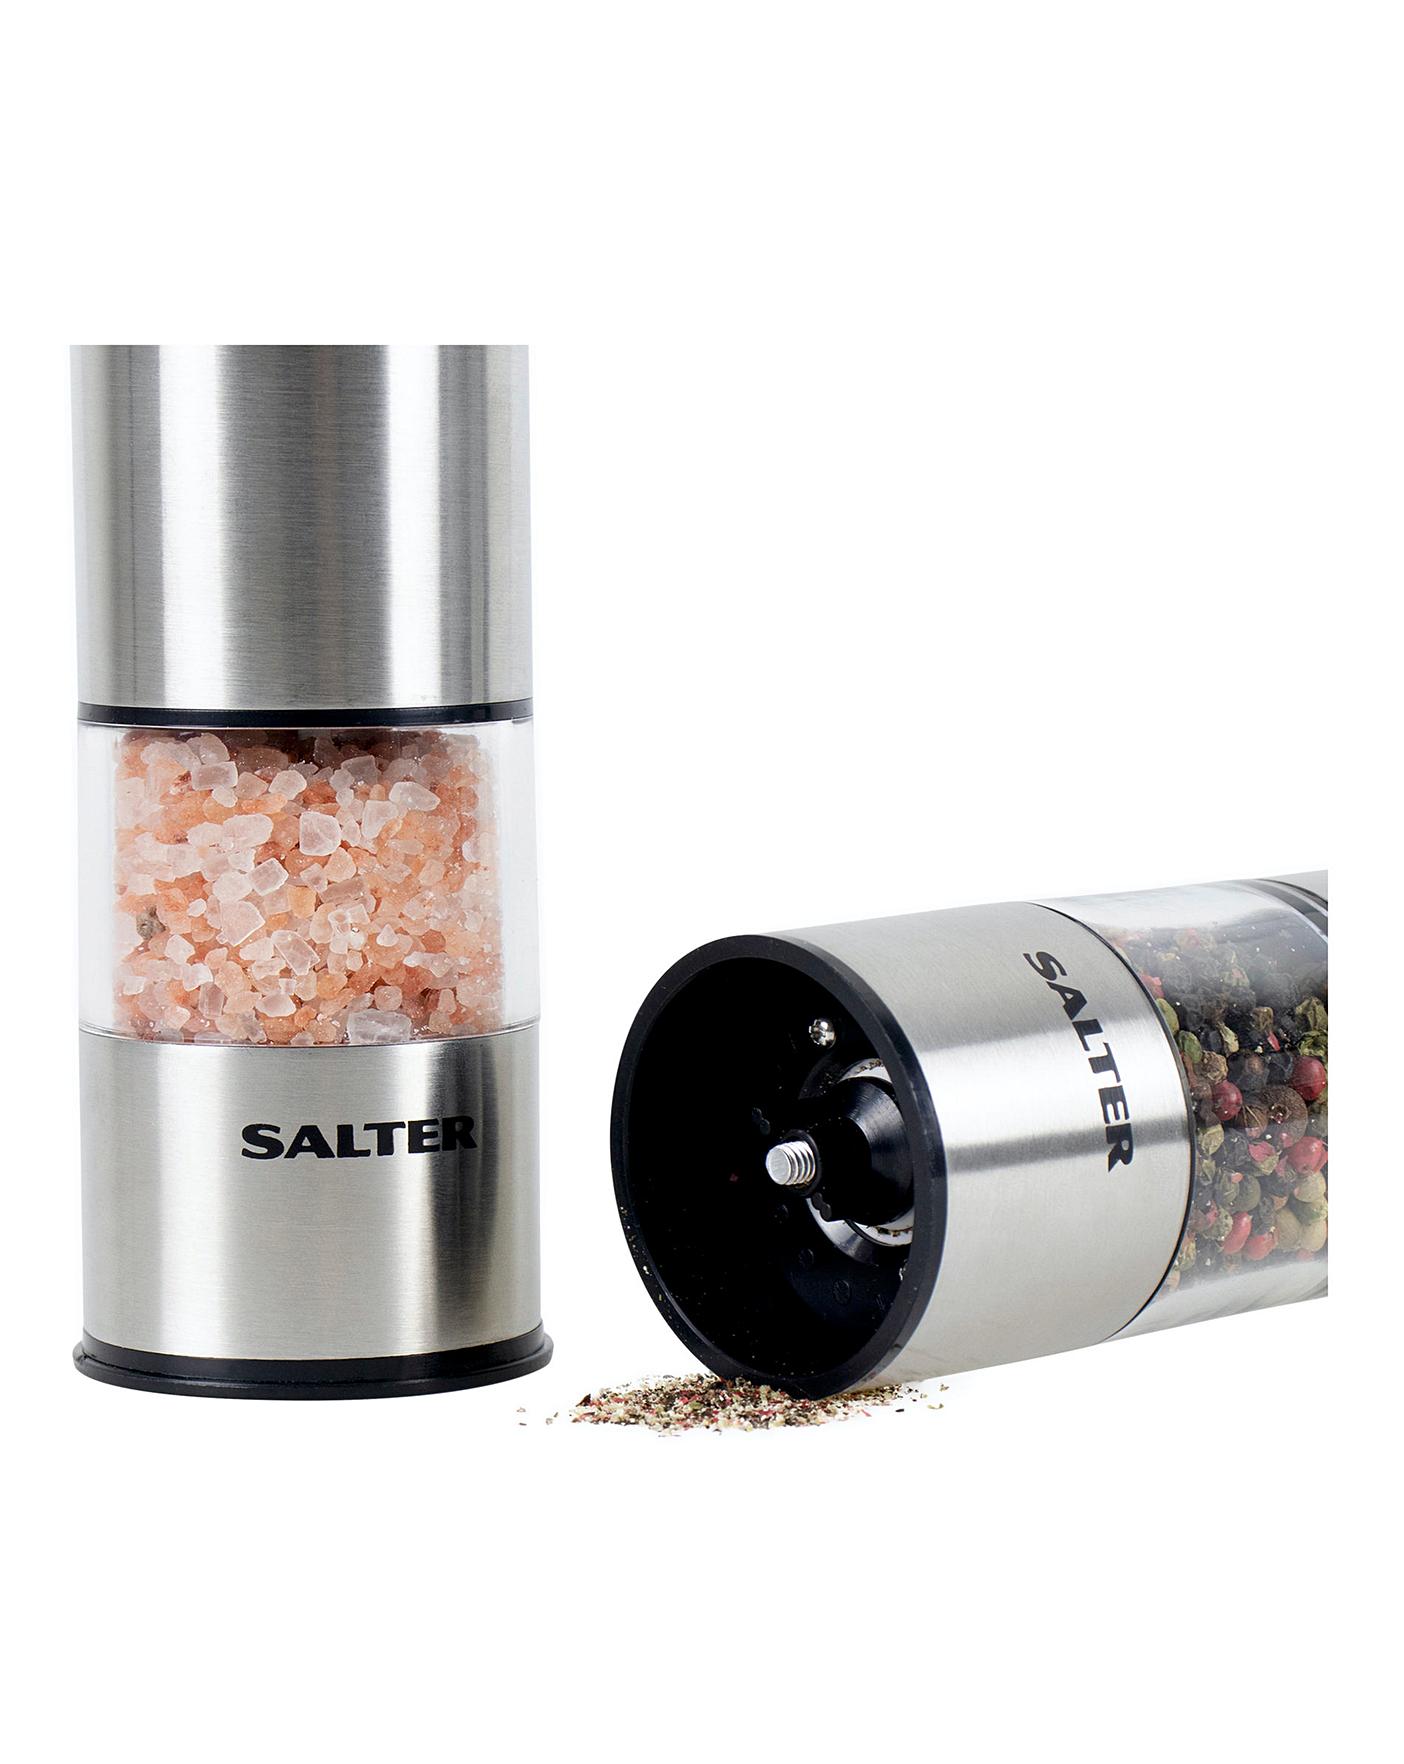 Salter Electric Salt & Pepper Grinder Set